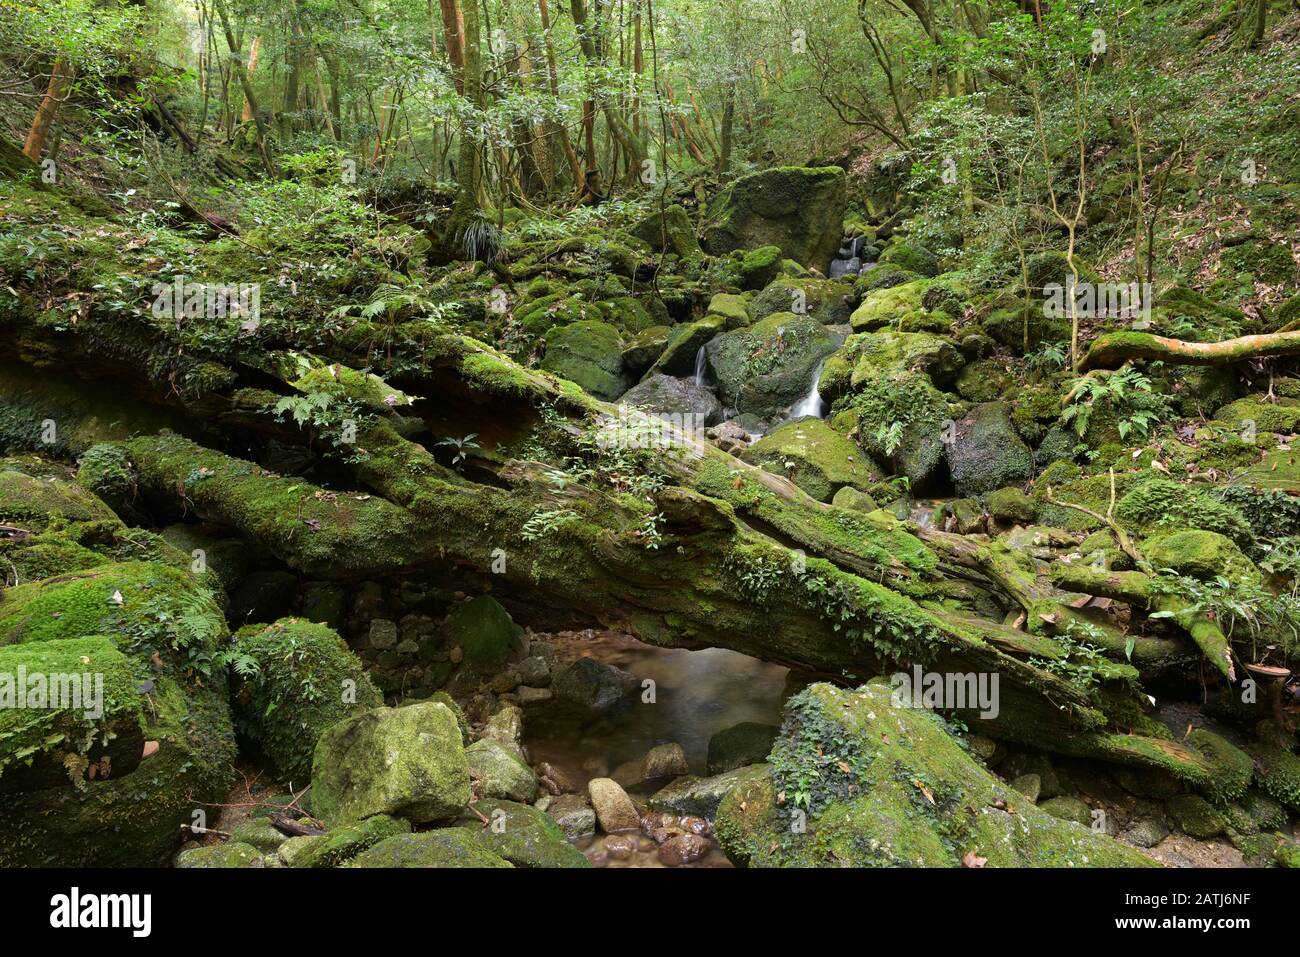 Nature National Park Yakushima Island Japan Stock Photo Alamy